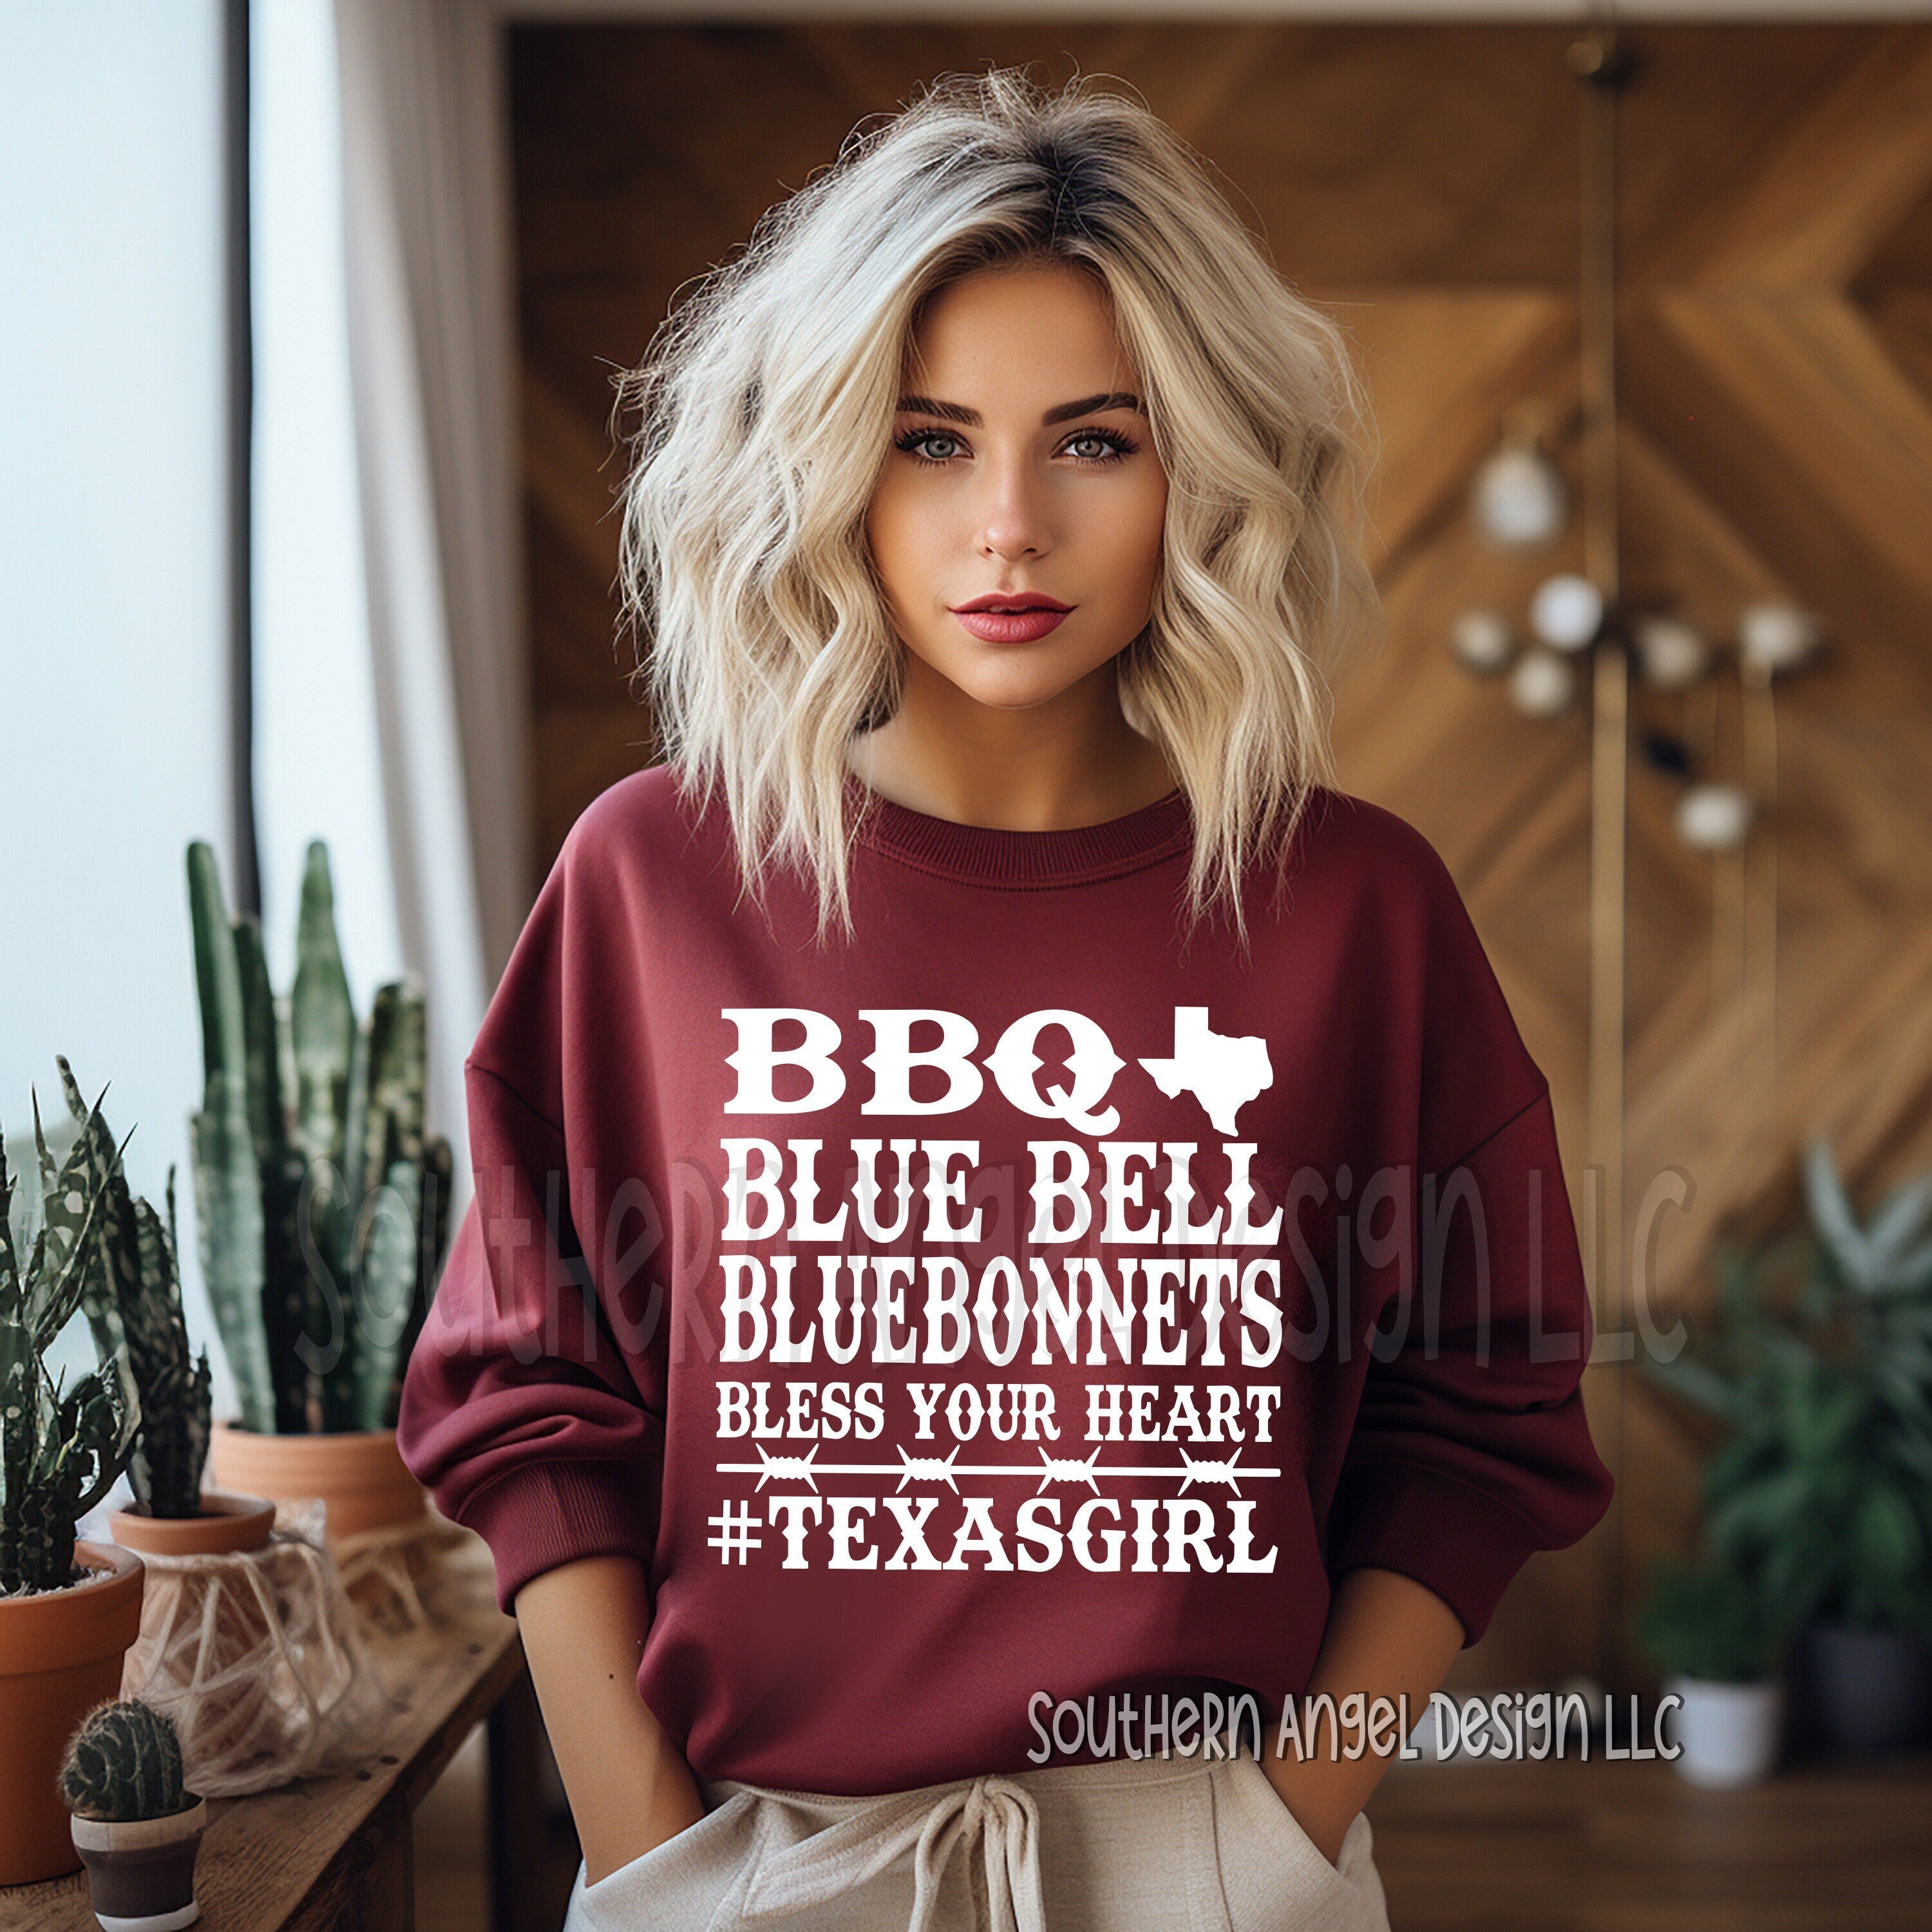 Texas Girl Sweatshirt, Western sweatshirt, Country music sweatshirt, concert sweatshirt, music festival, rodeo shirt, Texas girl